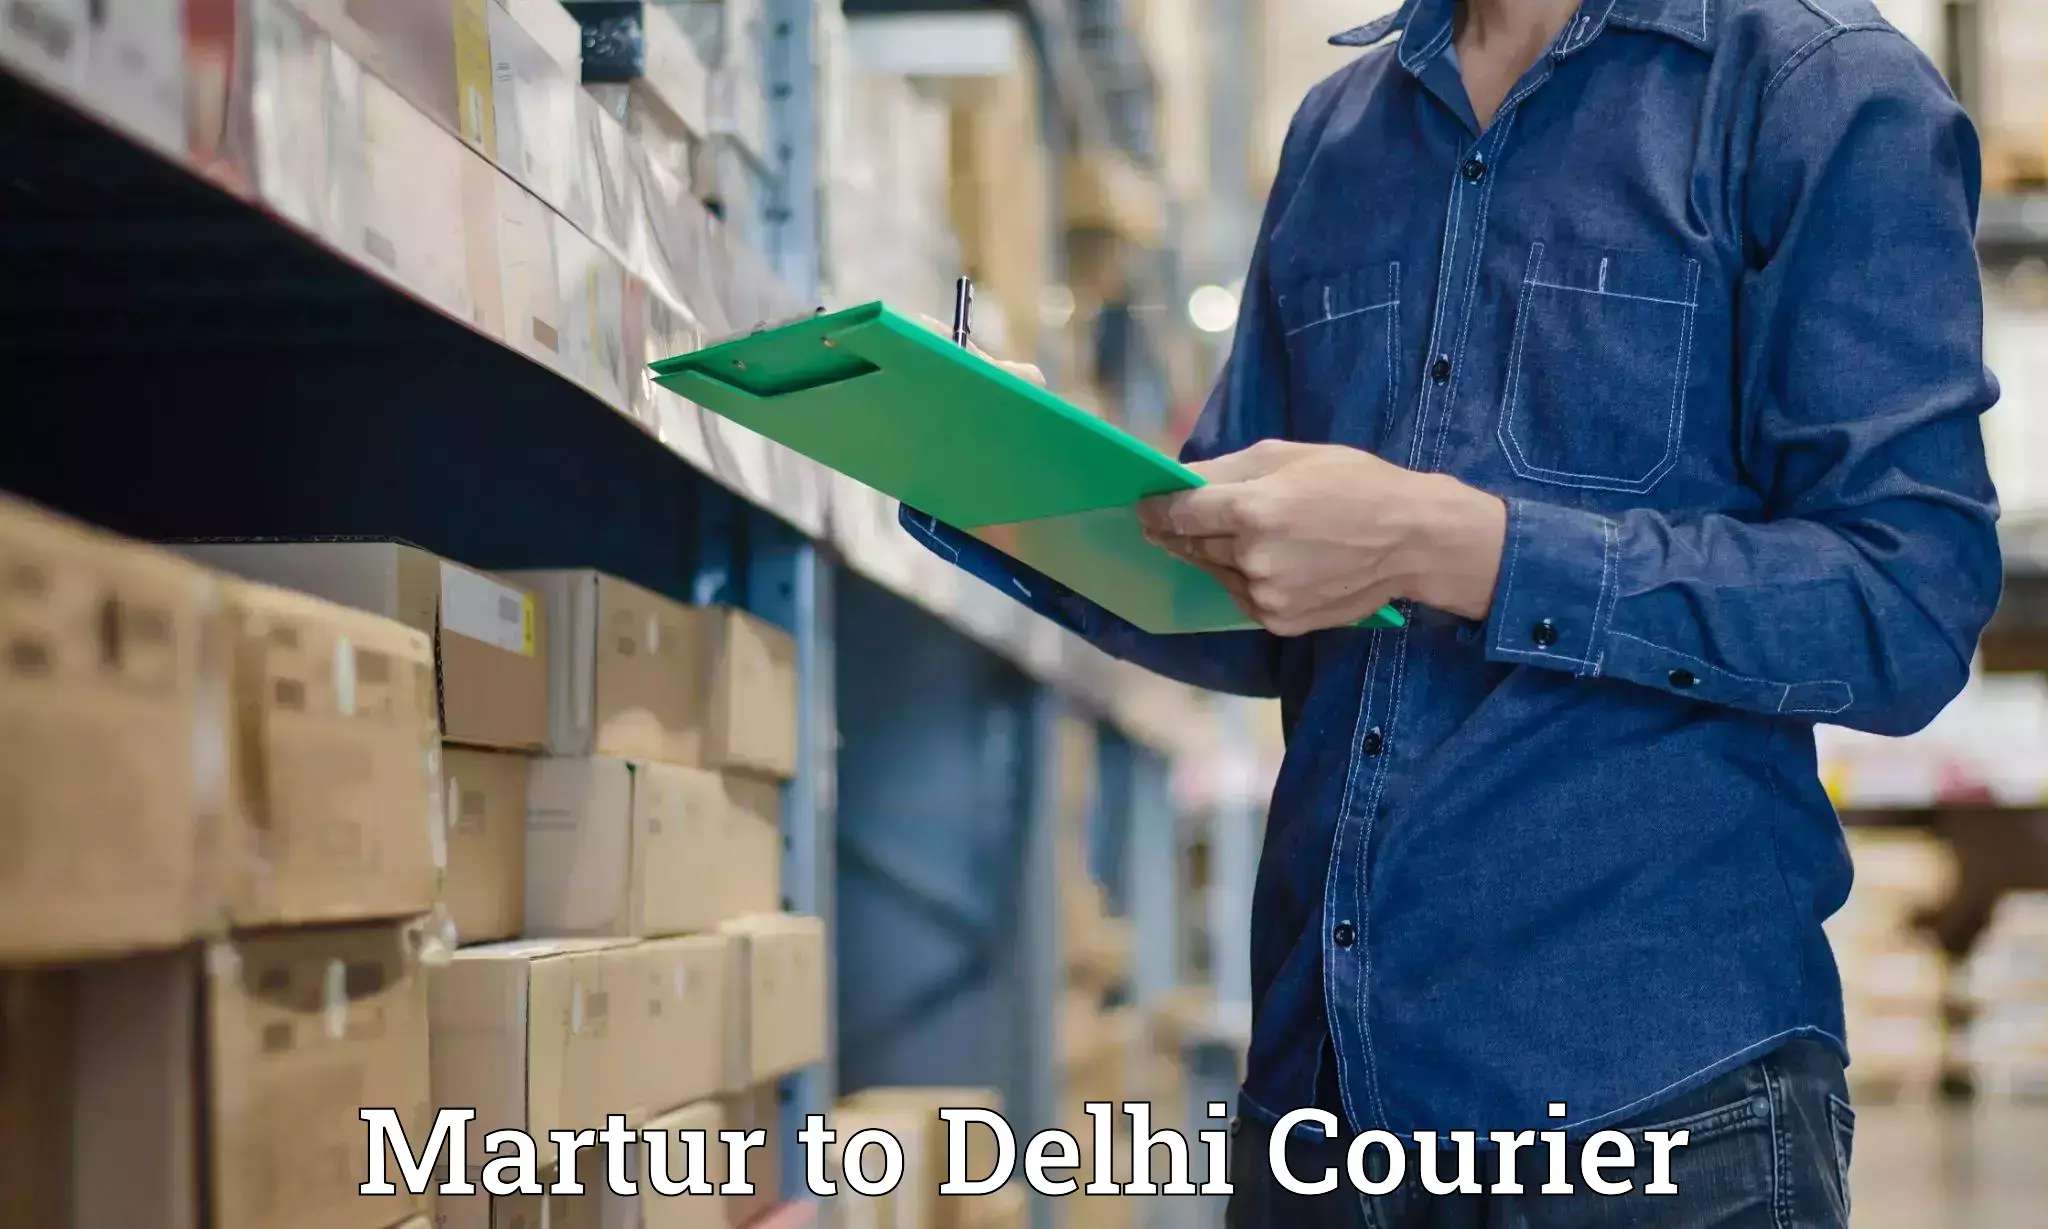 Express logistics service Martur to East Delhi